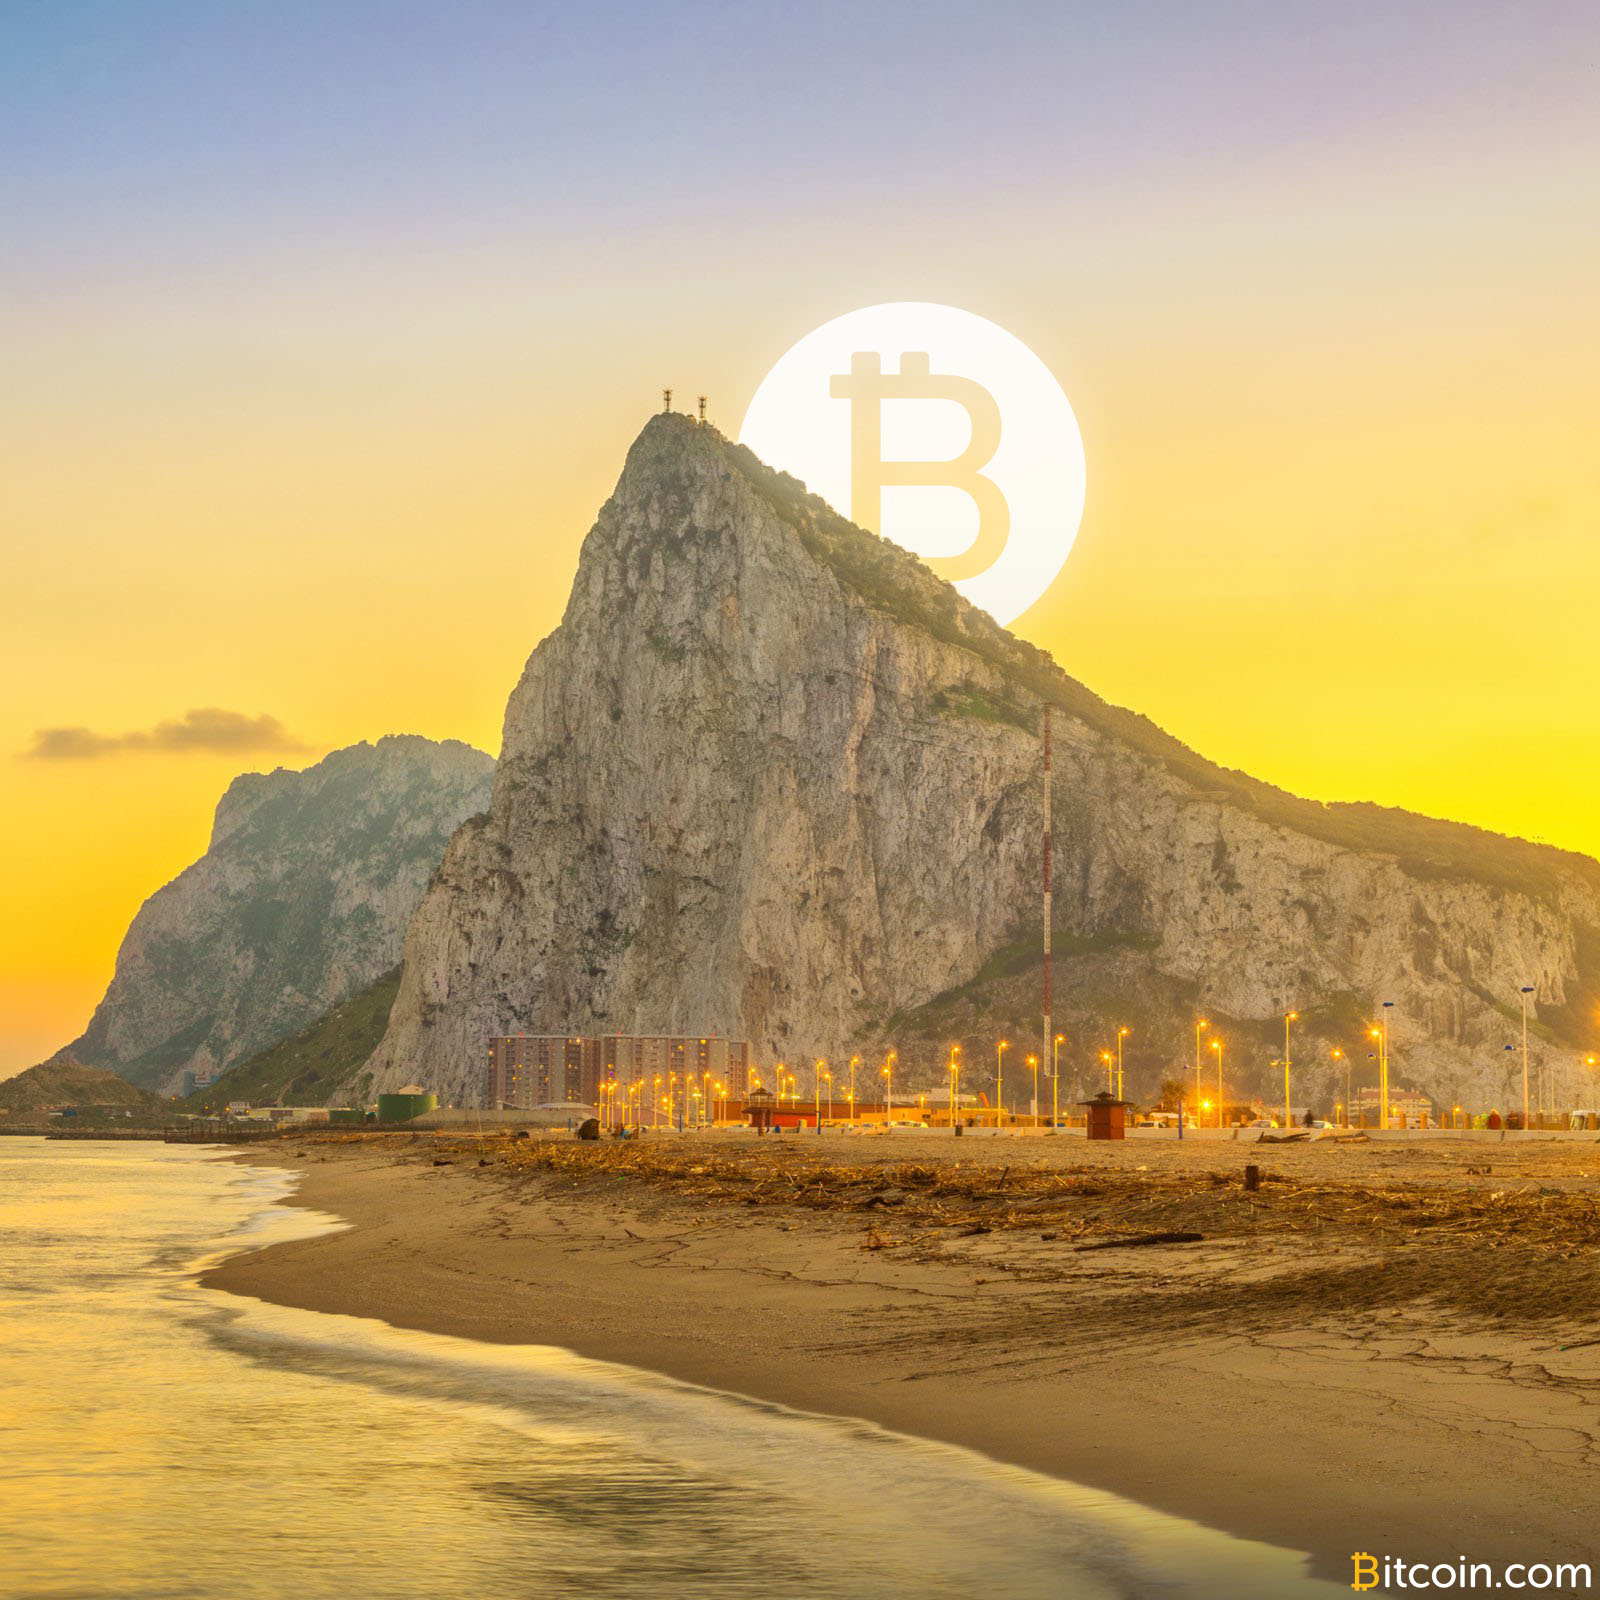 Gibraltar to Develop 